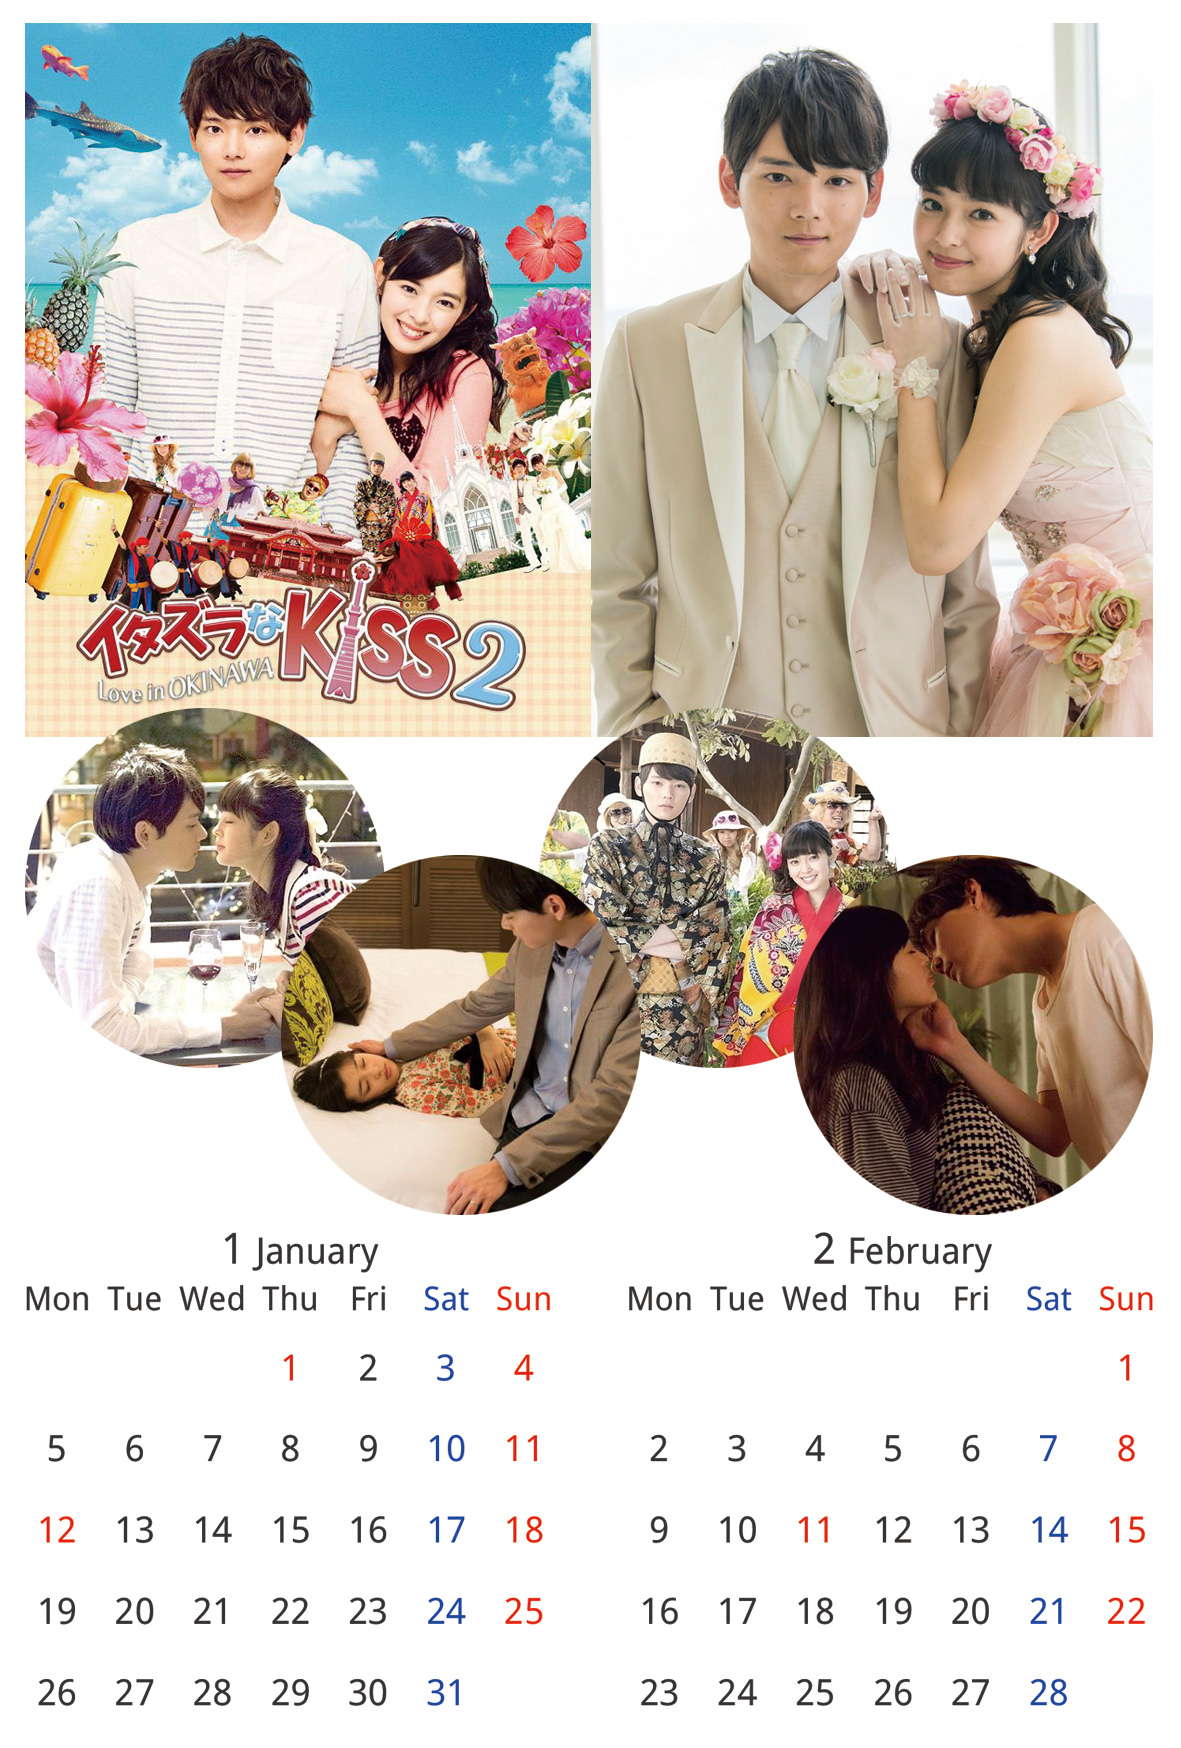 イタキスカレンダー2015 2ヶ月カレンダー 月曜はじまり カレンダー